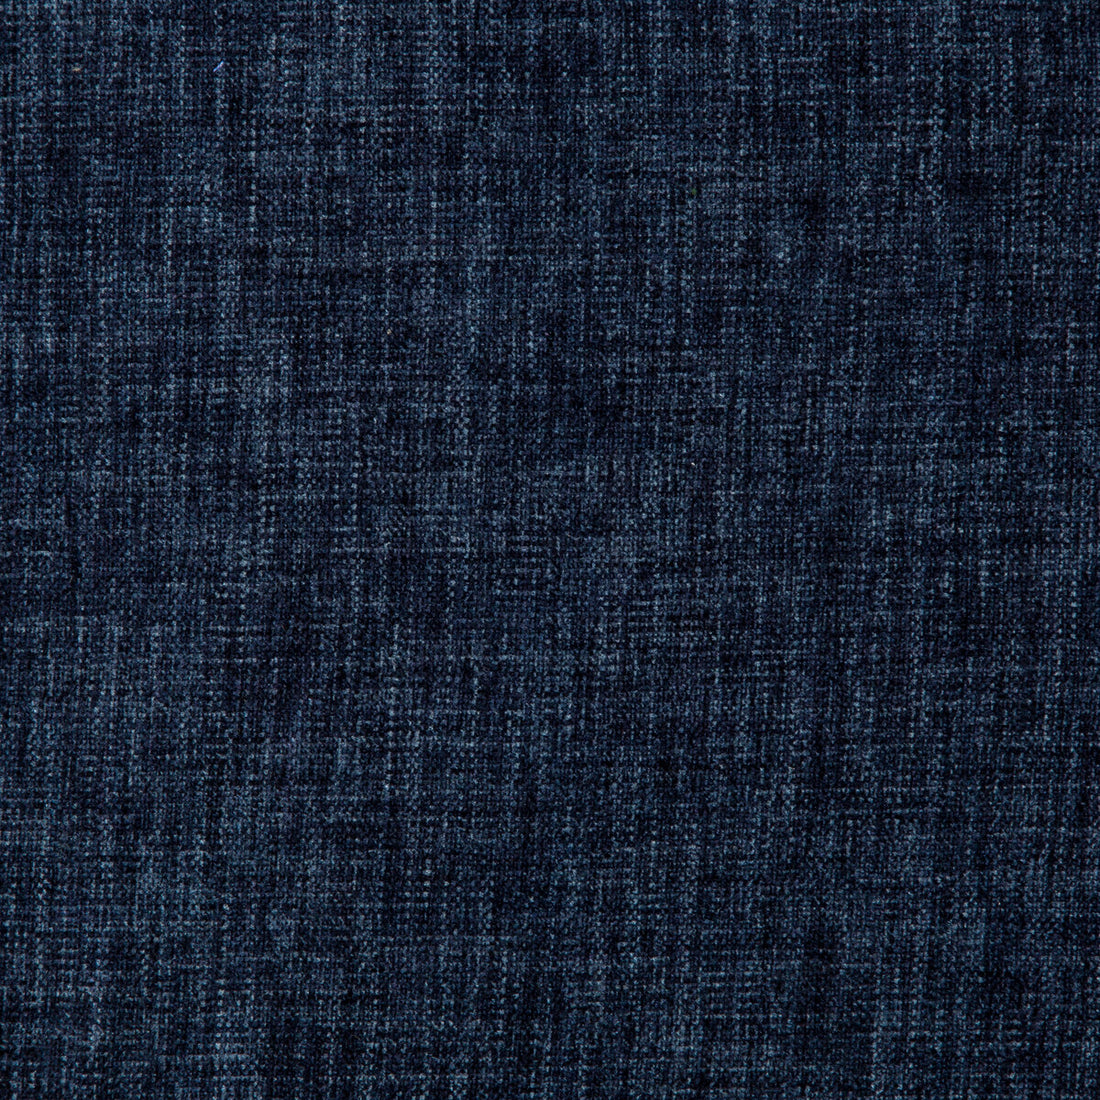 Kravet Basics fabric in 35775-50 color - pattern 35775.50.0 - by Kravet Basics